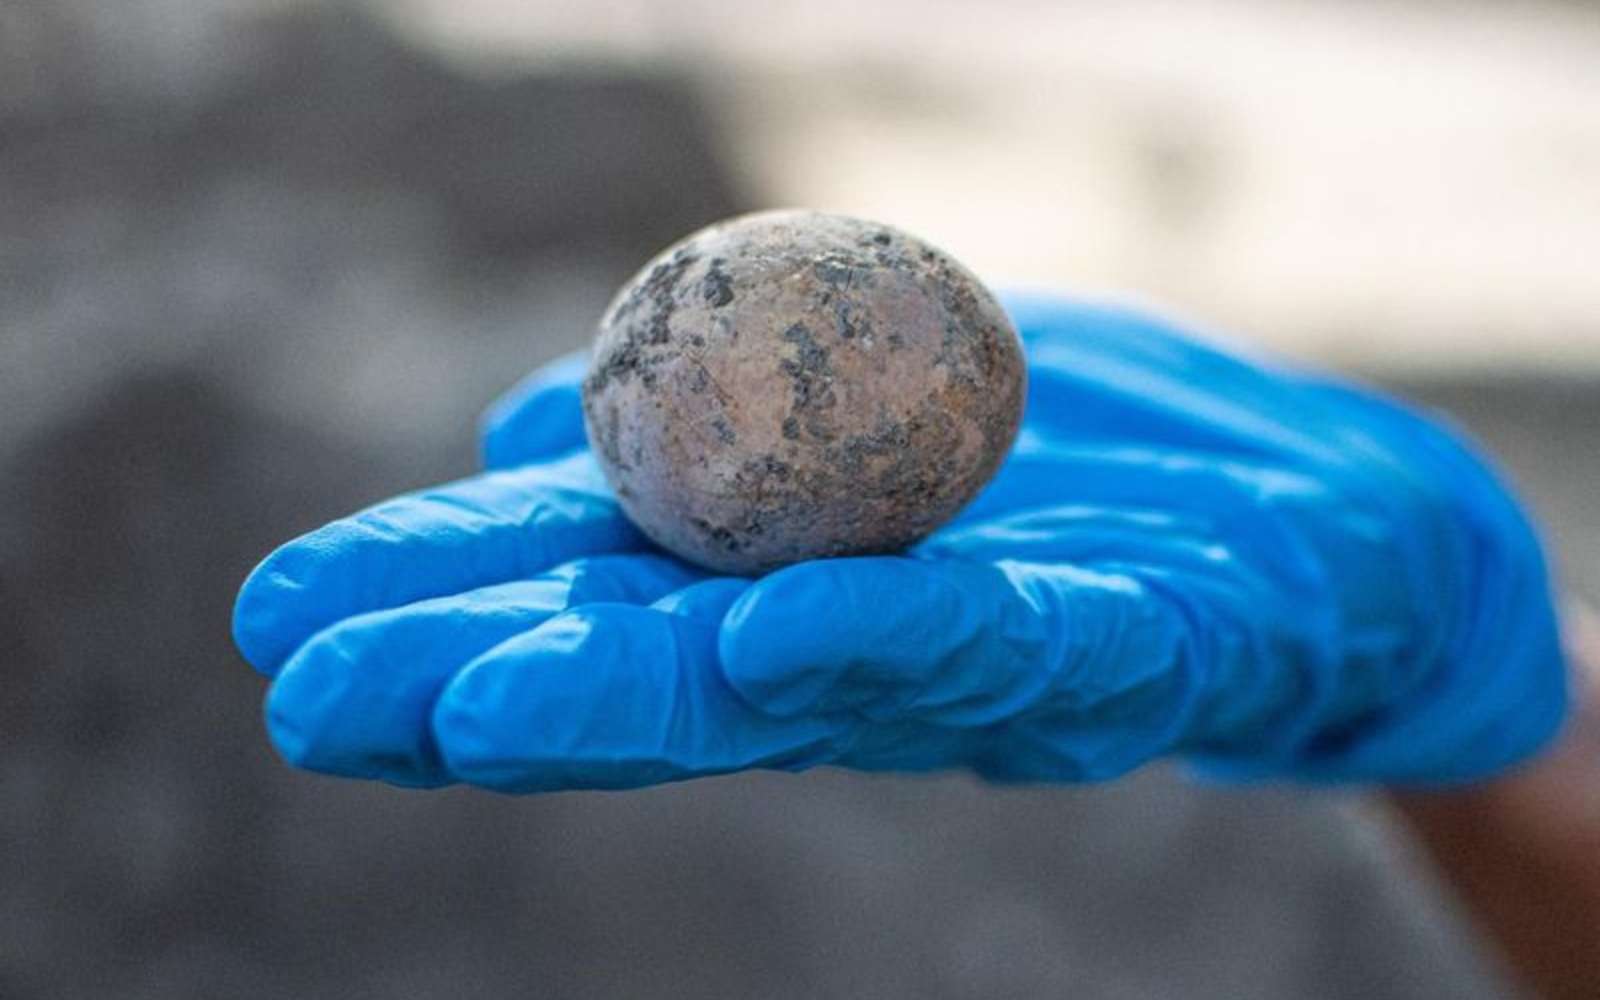 L'œuf, âgé de mille ans, découvert par les archéologues israéliens. Fissuré, l'œuf a perdu une grande partie de son contenu. © Yoli Schwartz, Israel Antiquities Authority